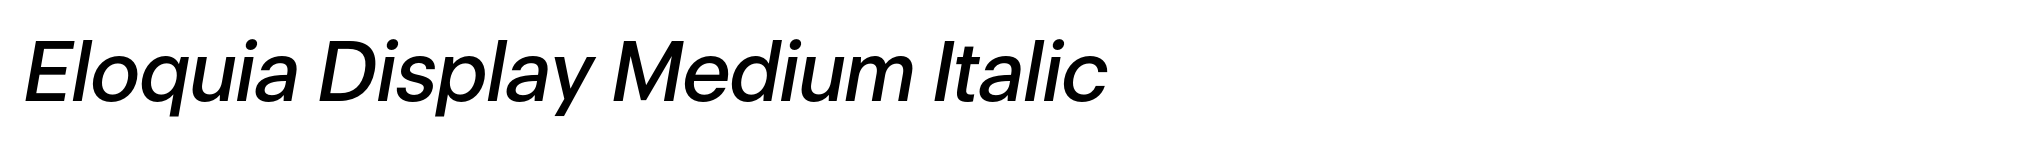 Eloquia Display Medium Italic image